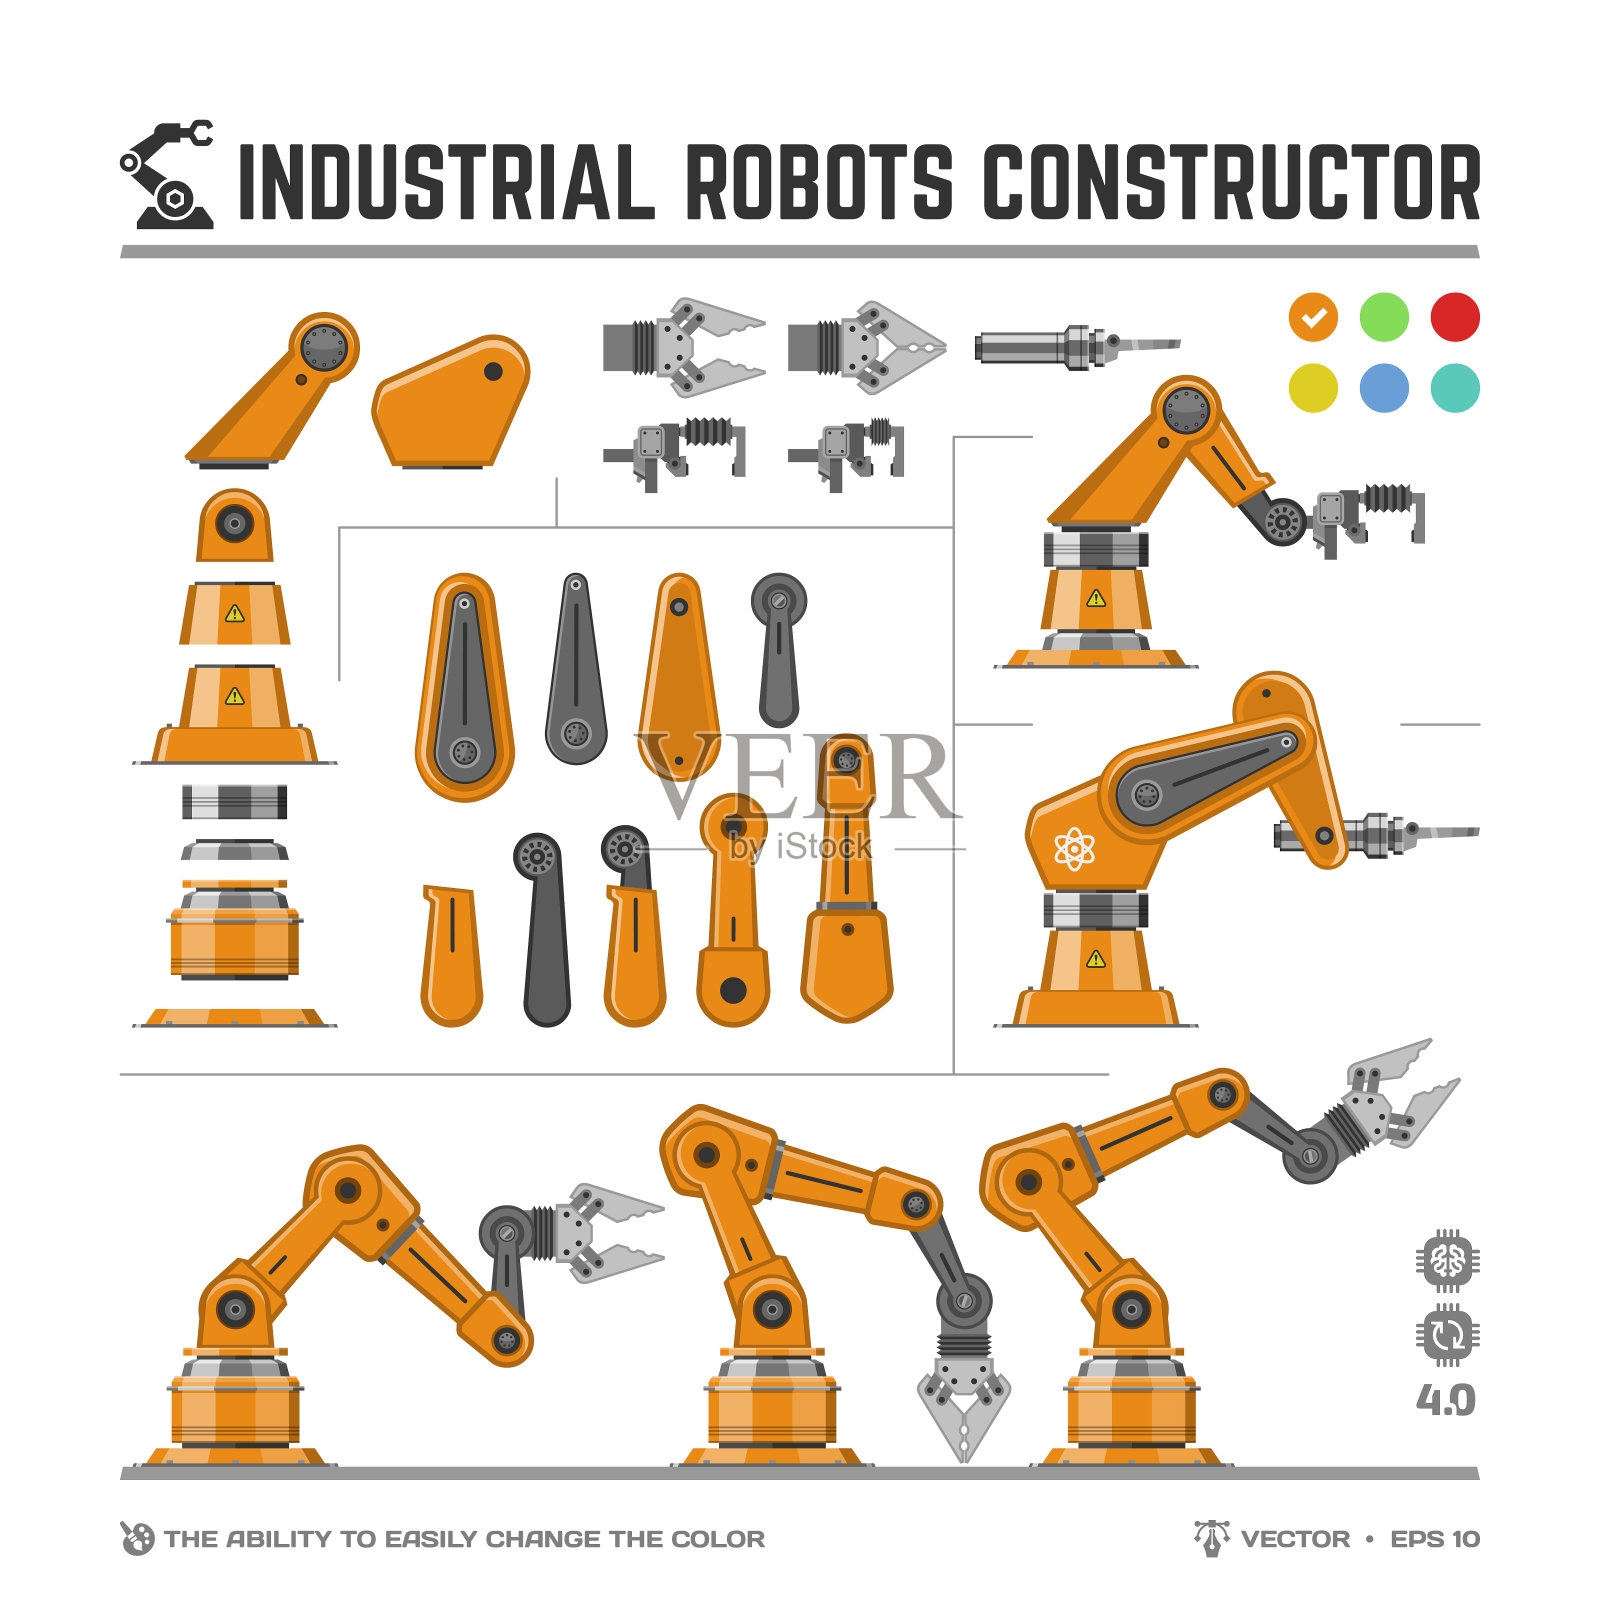 工业机器人构造器集平机各种类型的手臂或机械手套件(能够轻松改变颜色)，工业4.0机器人创造生成器用于动画和设计。插画图片素材